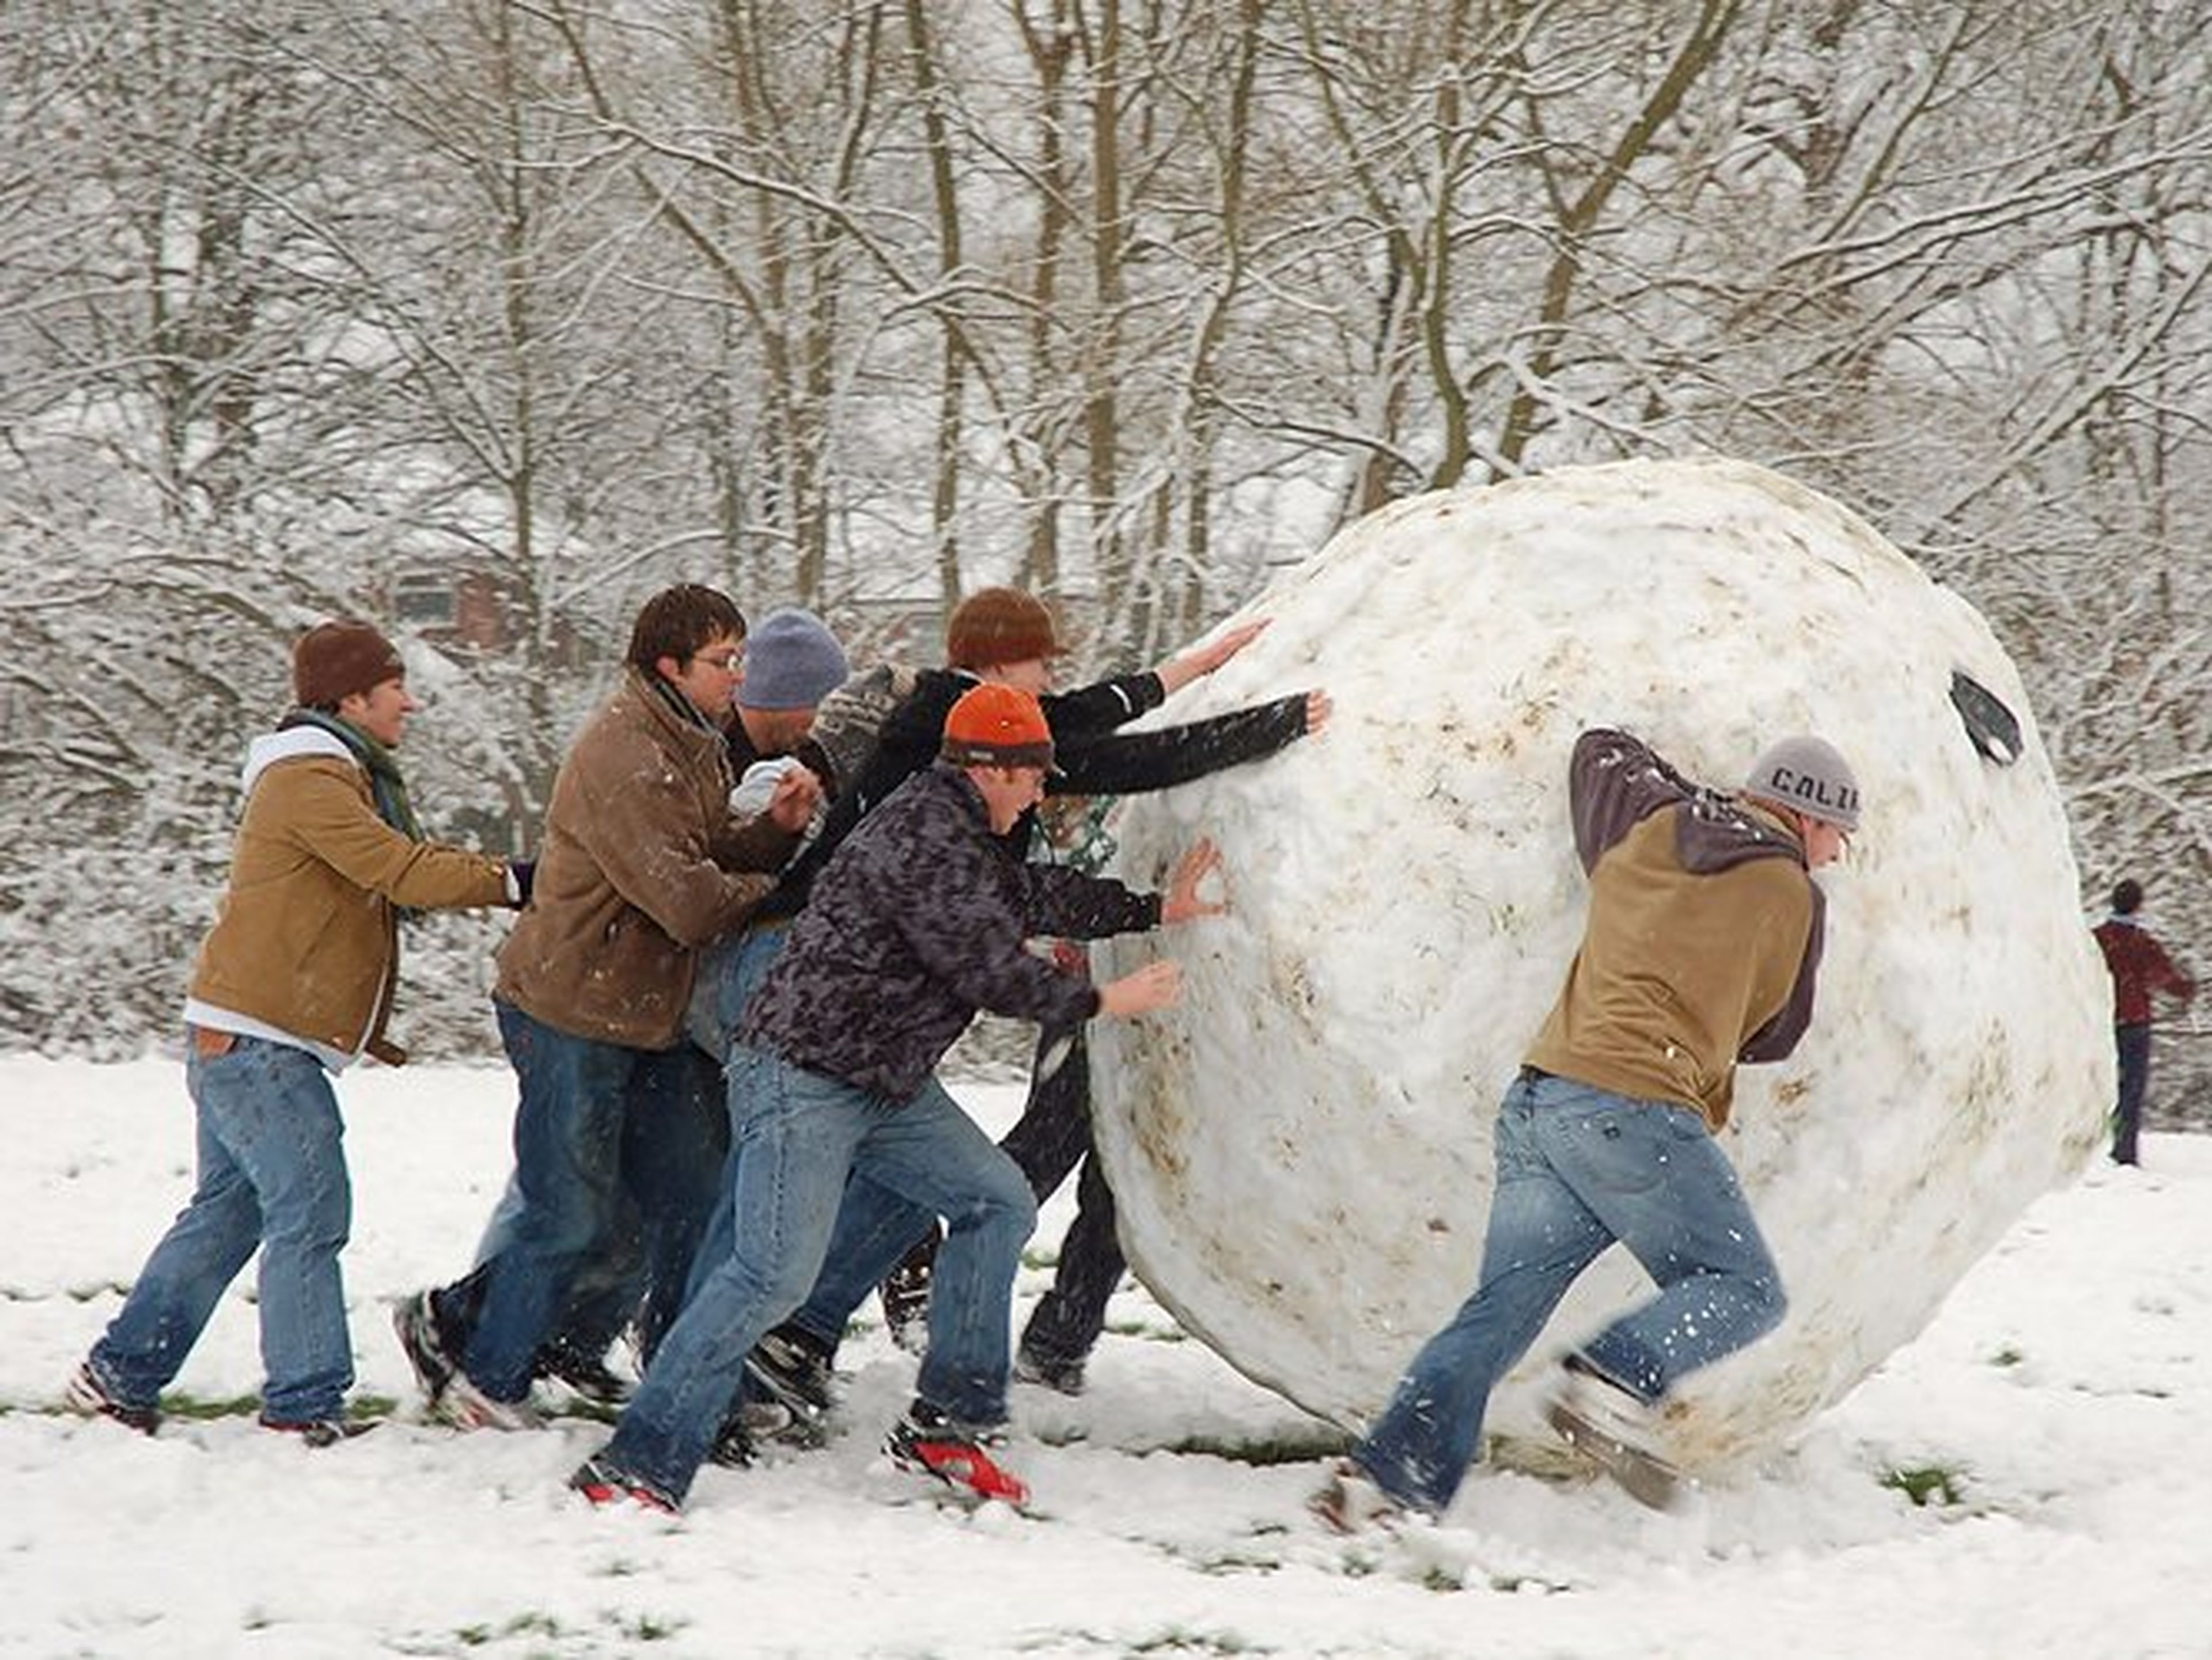 [re] Unos chicos jóvenes juegan con una bola de nieve